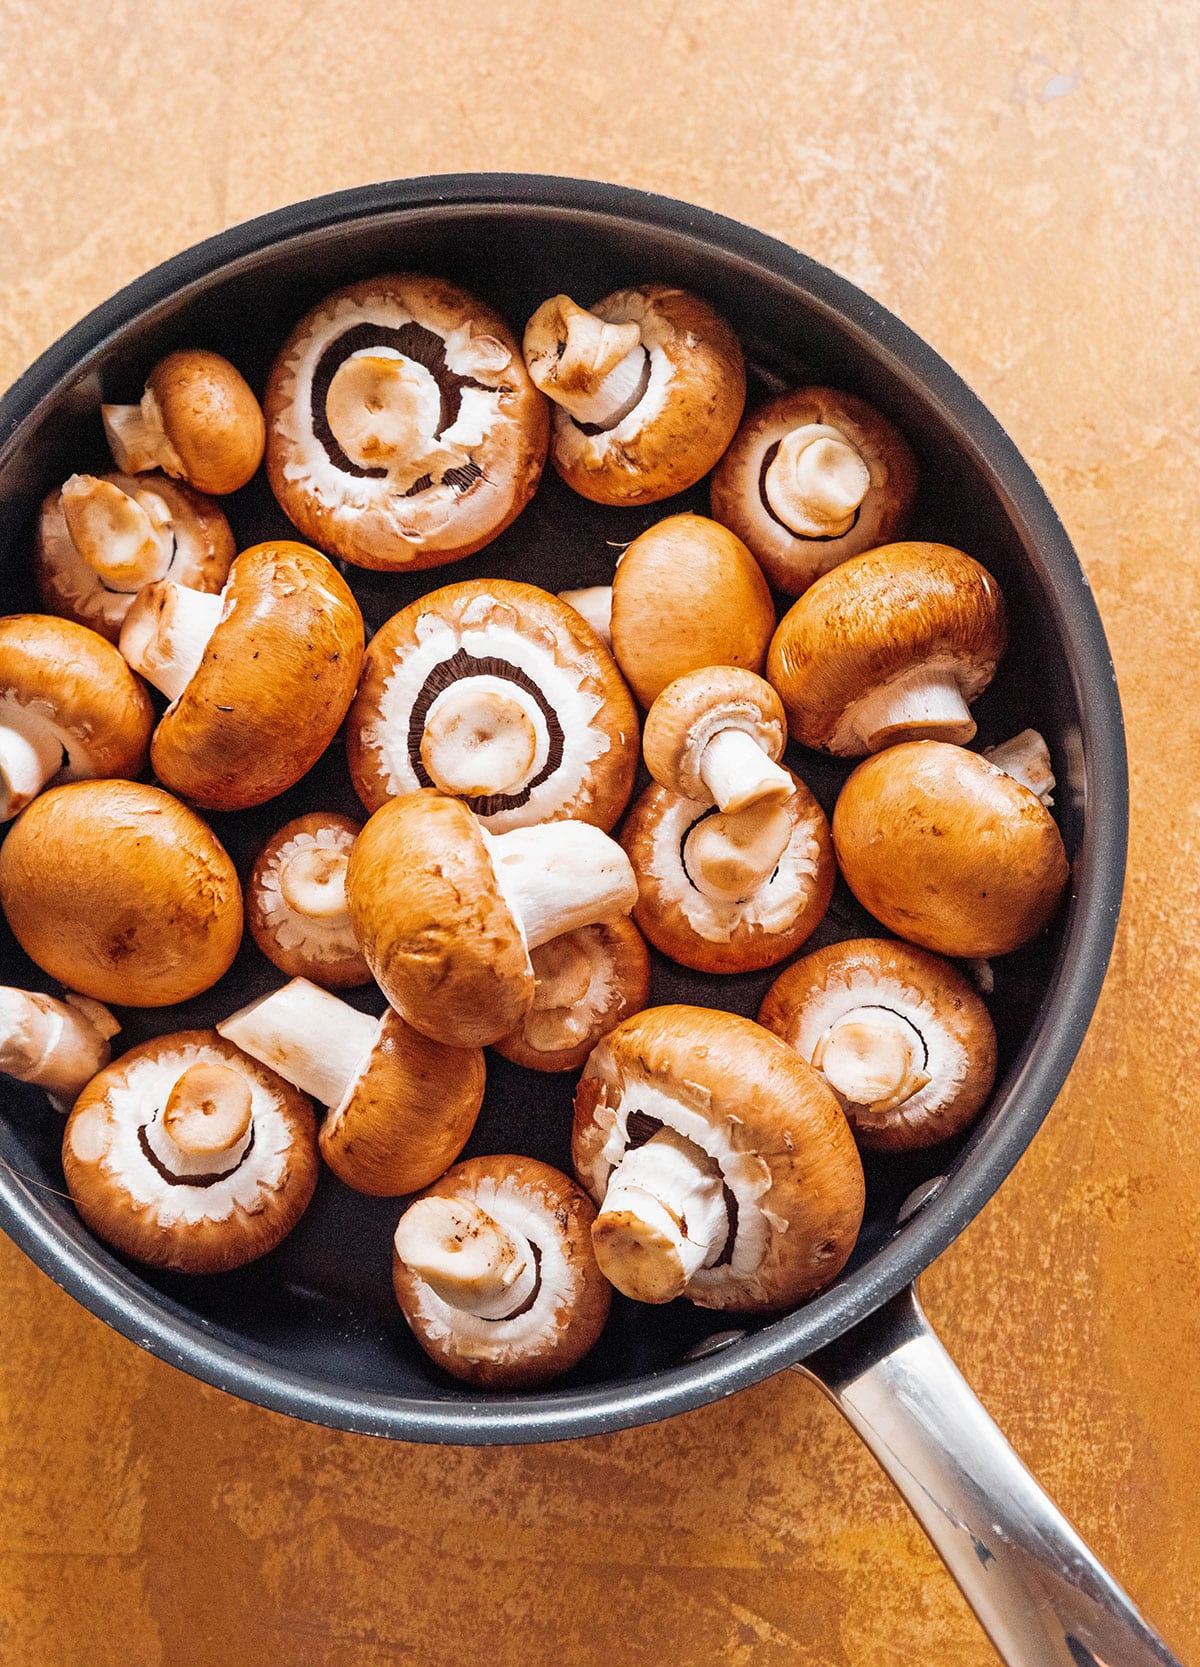 Baby Bella mushrooms in a saucepan.